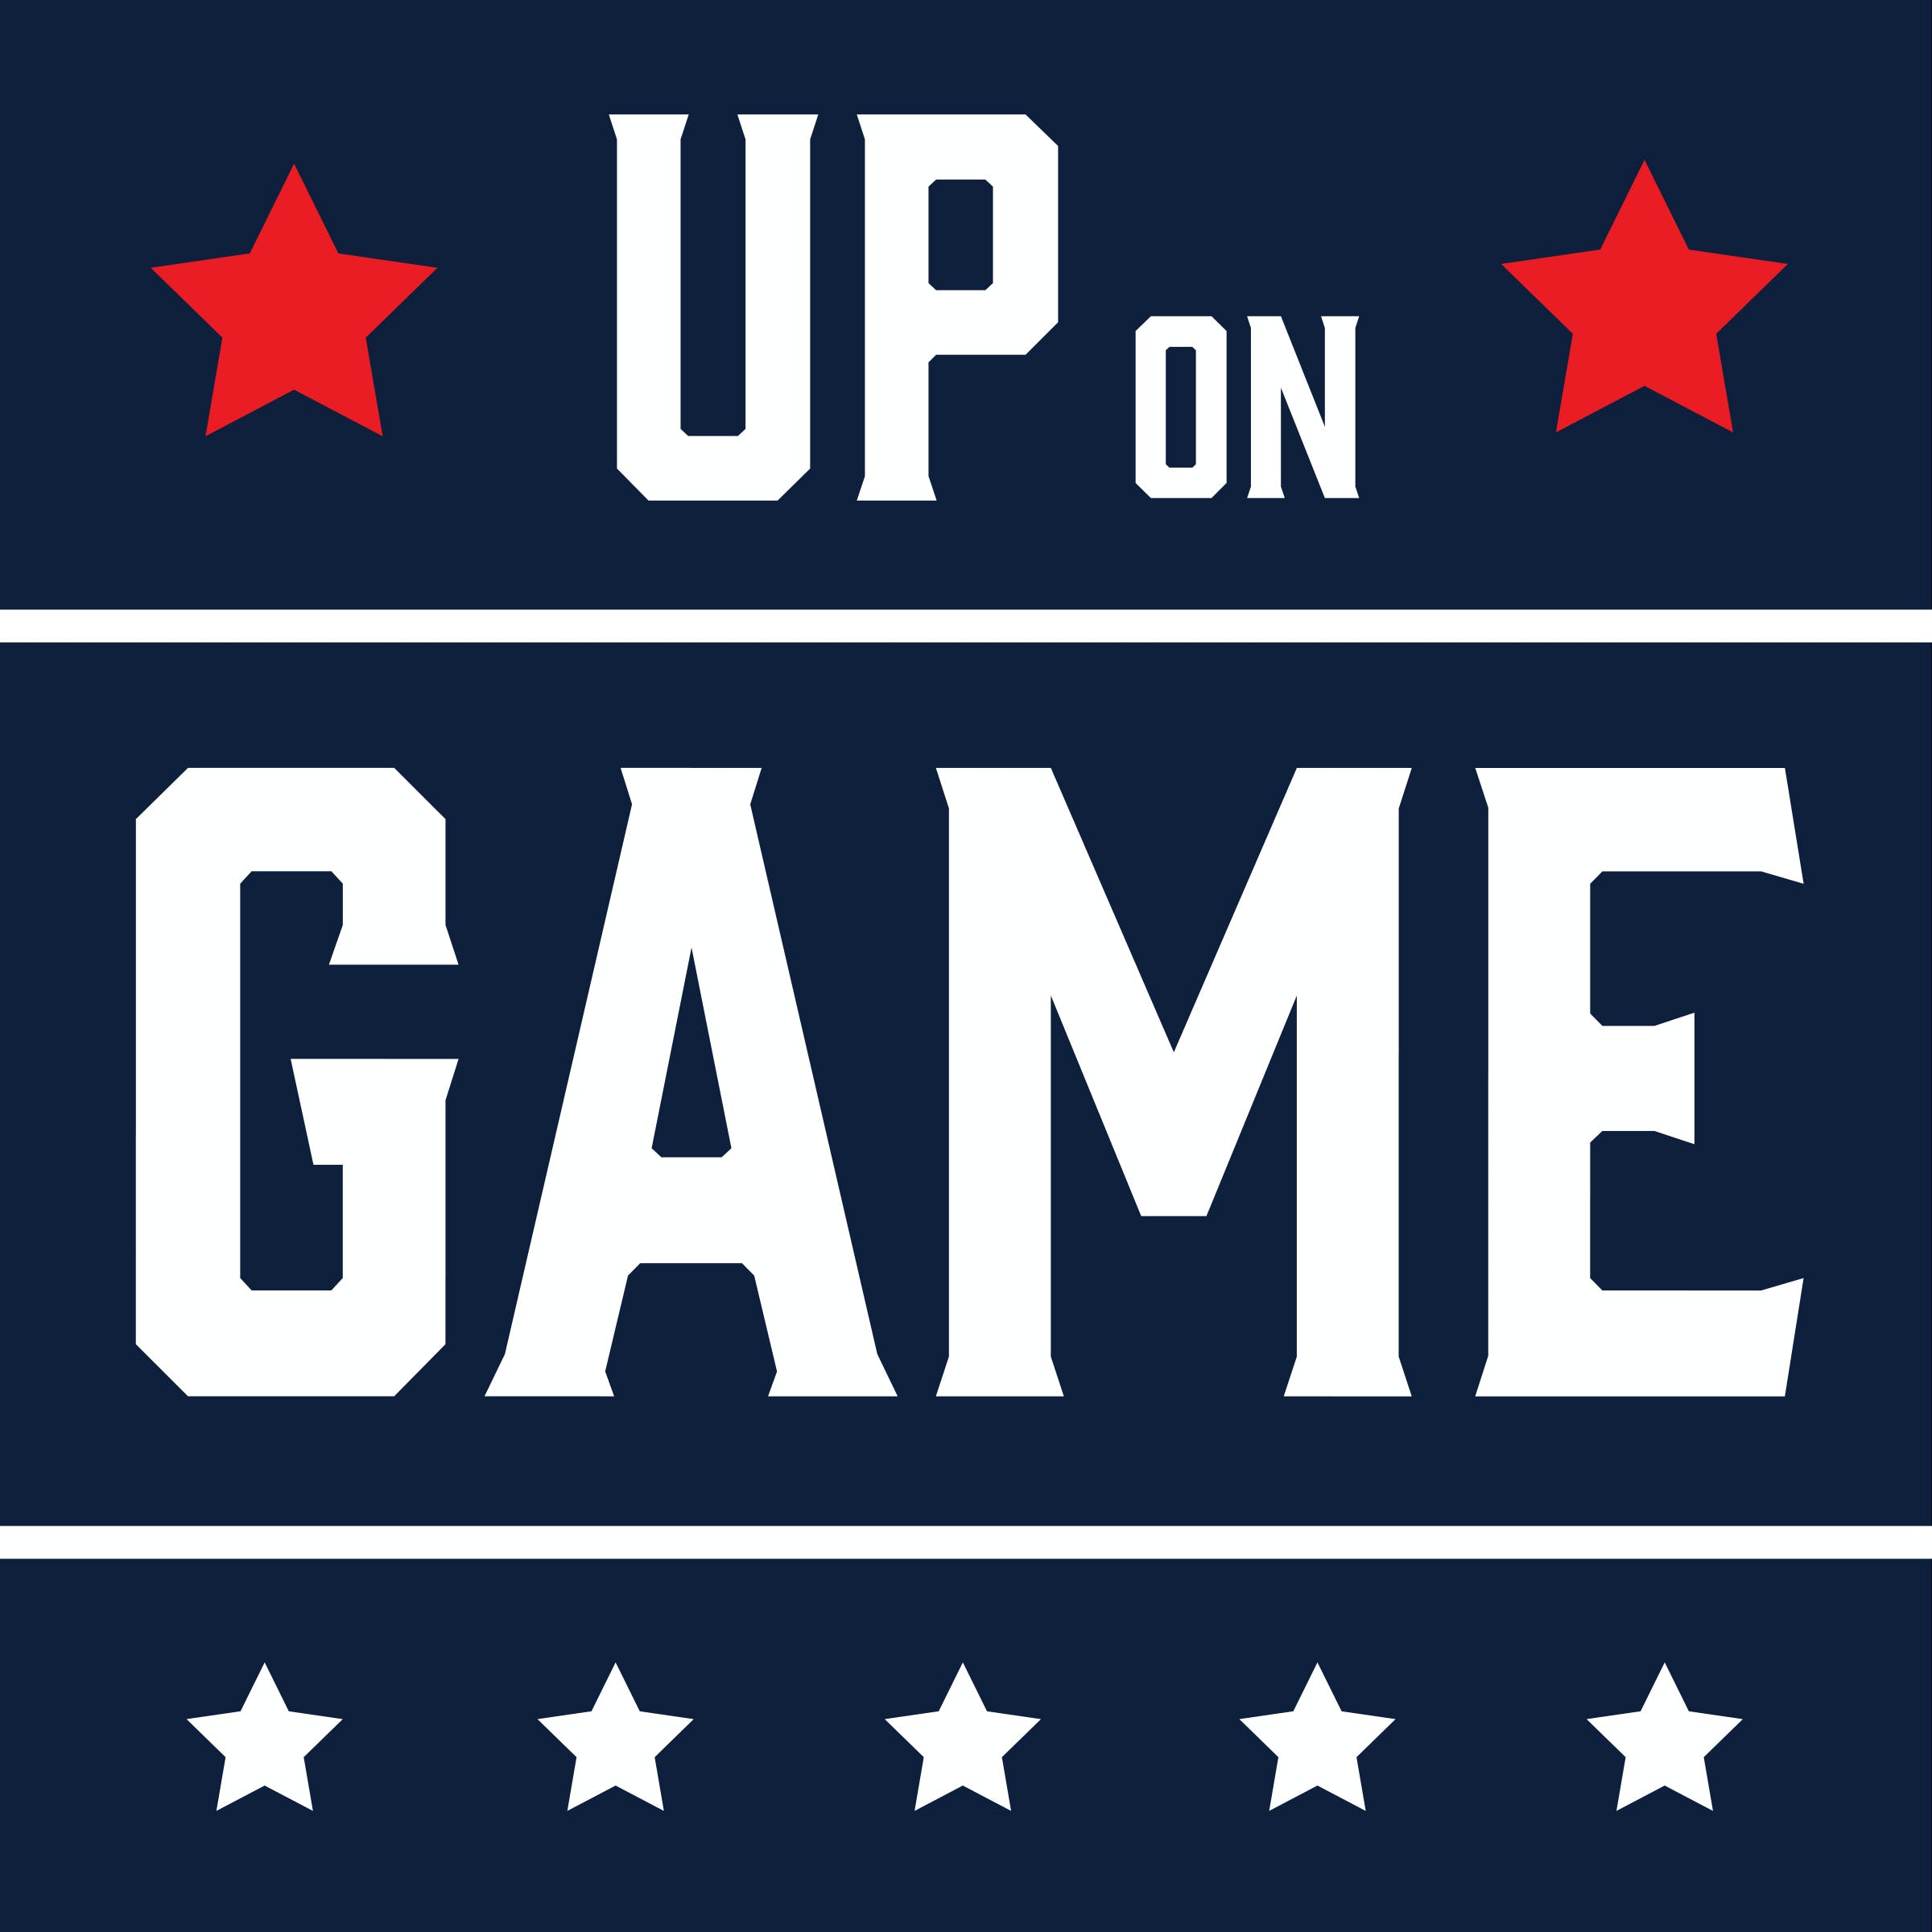 Up on Game: Hour 1 - Jayden Daniels, Dak Prescott, Chargers